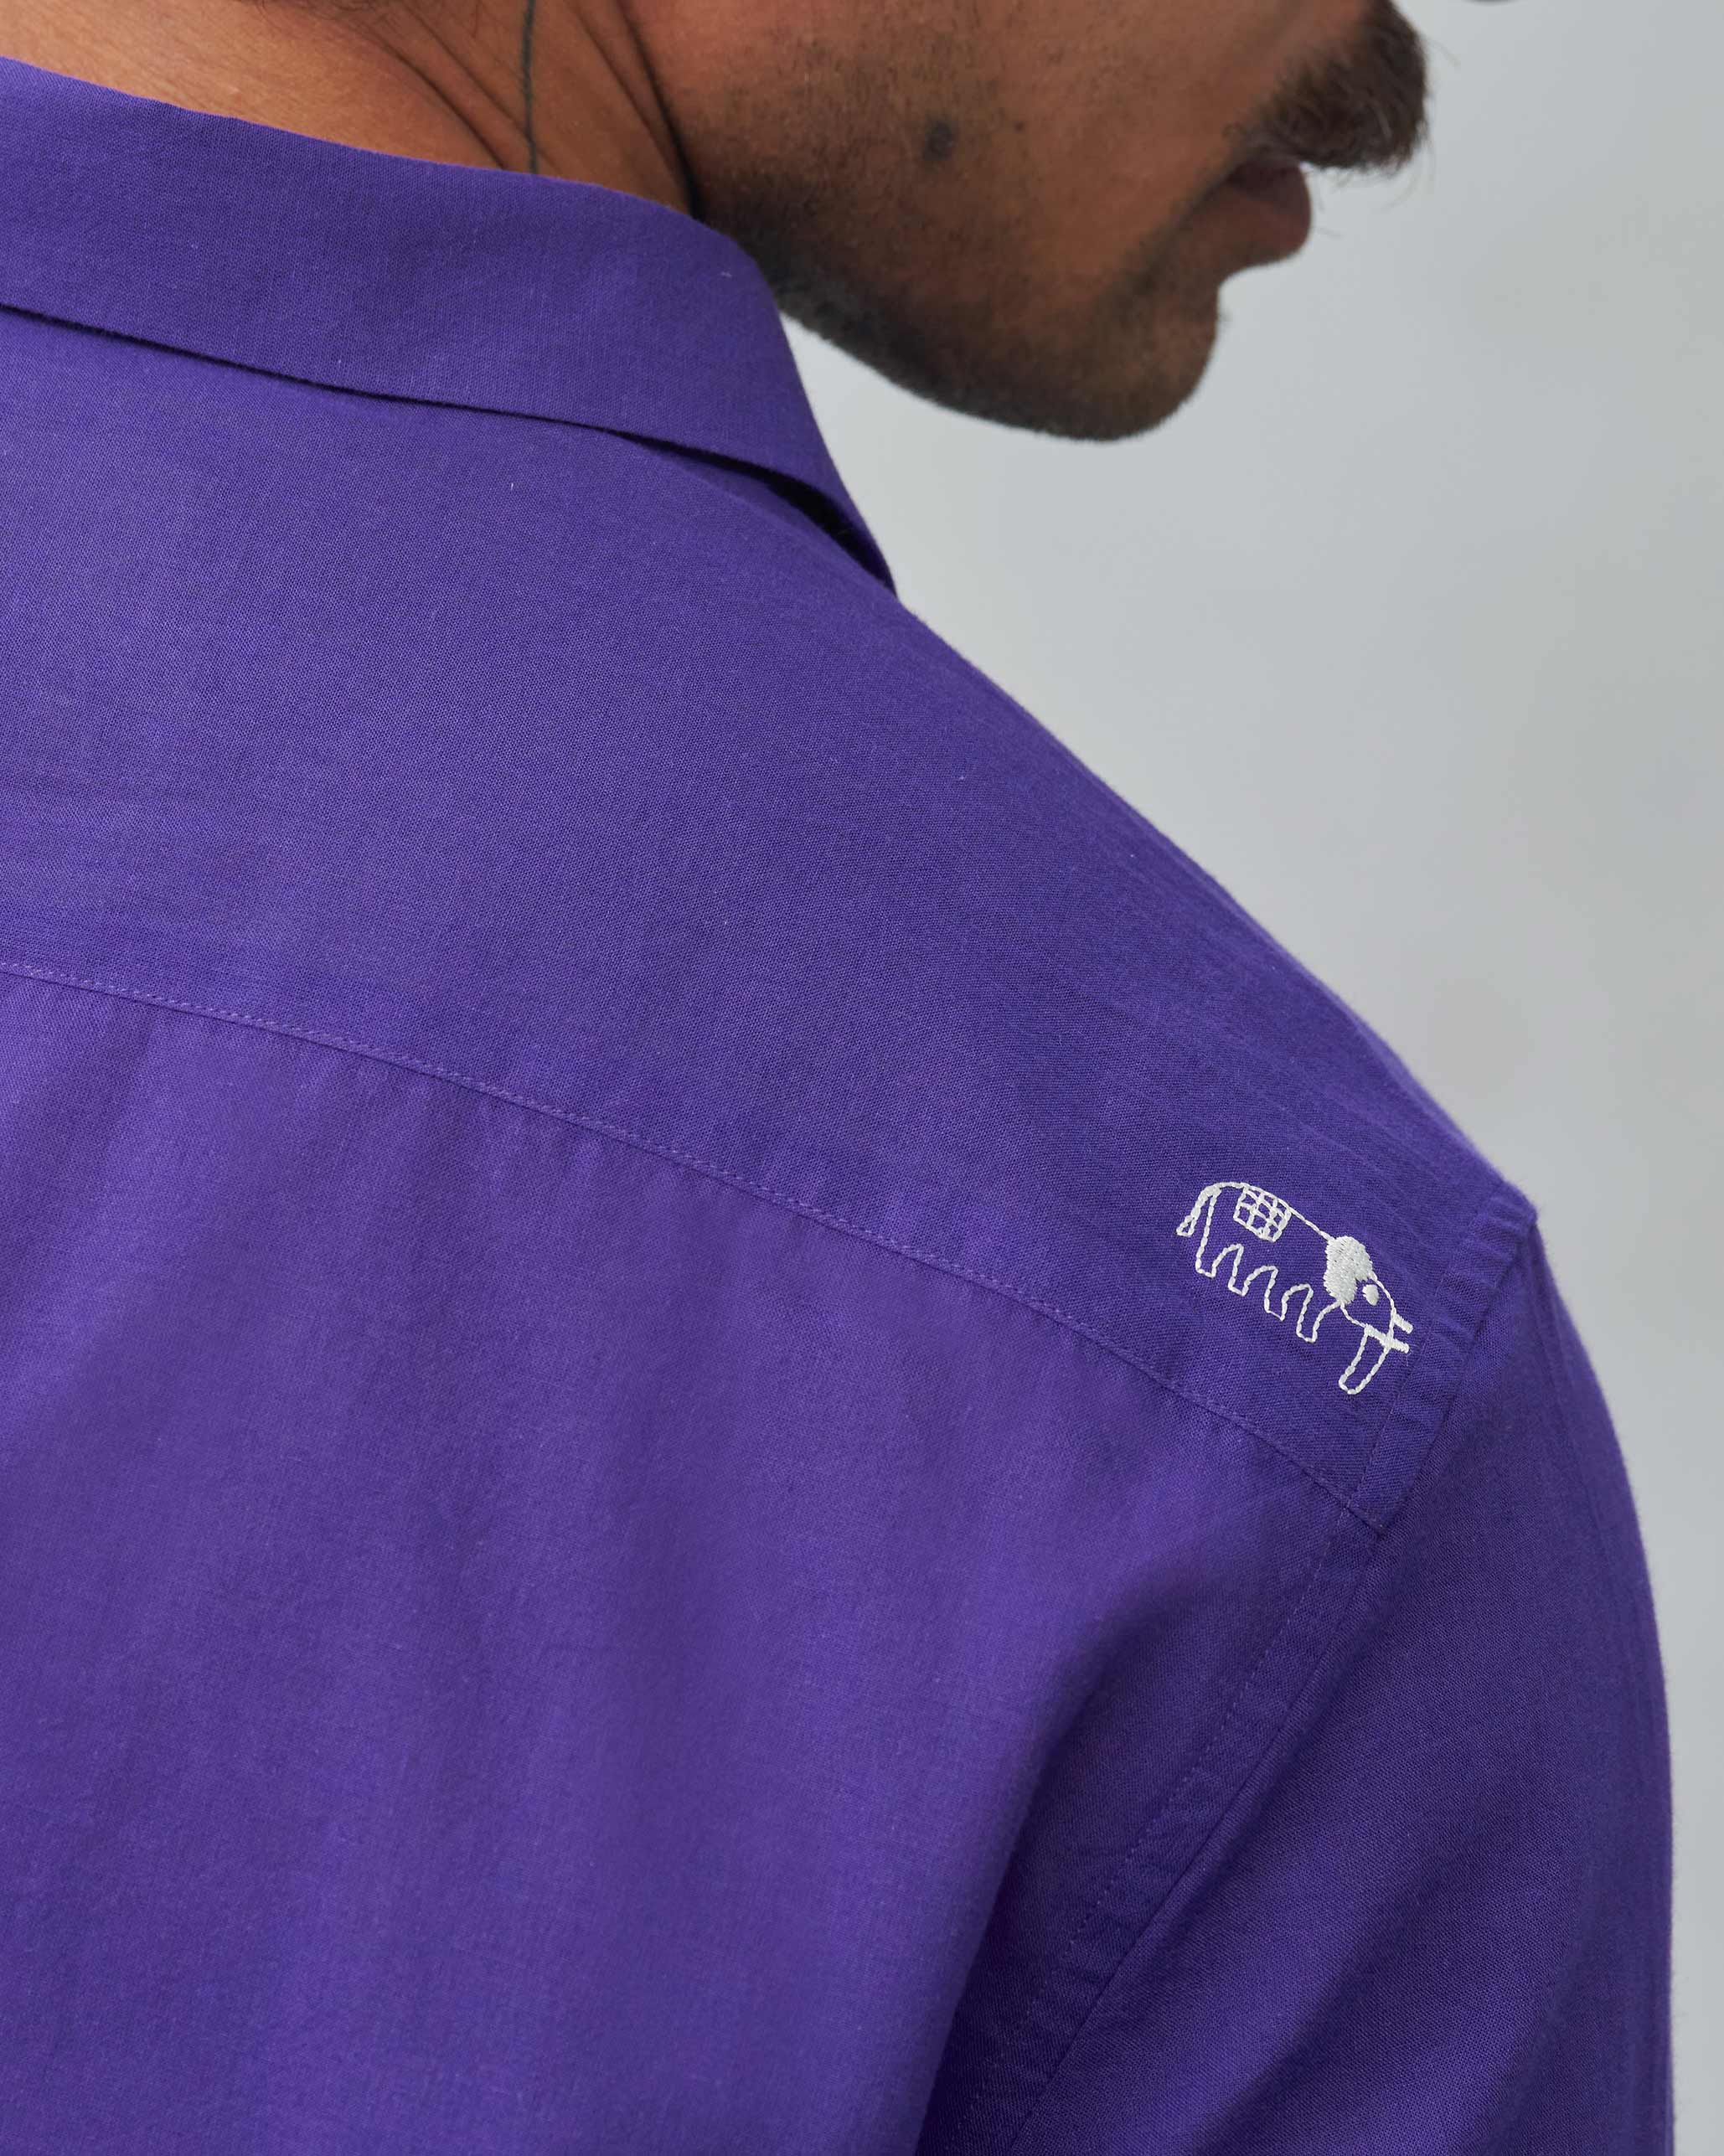 Sankara Shirt - Purple